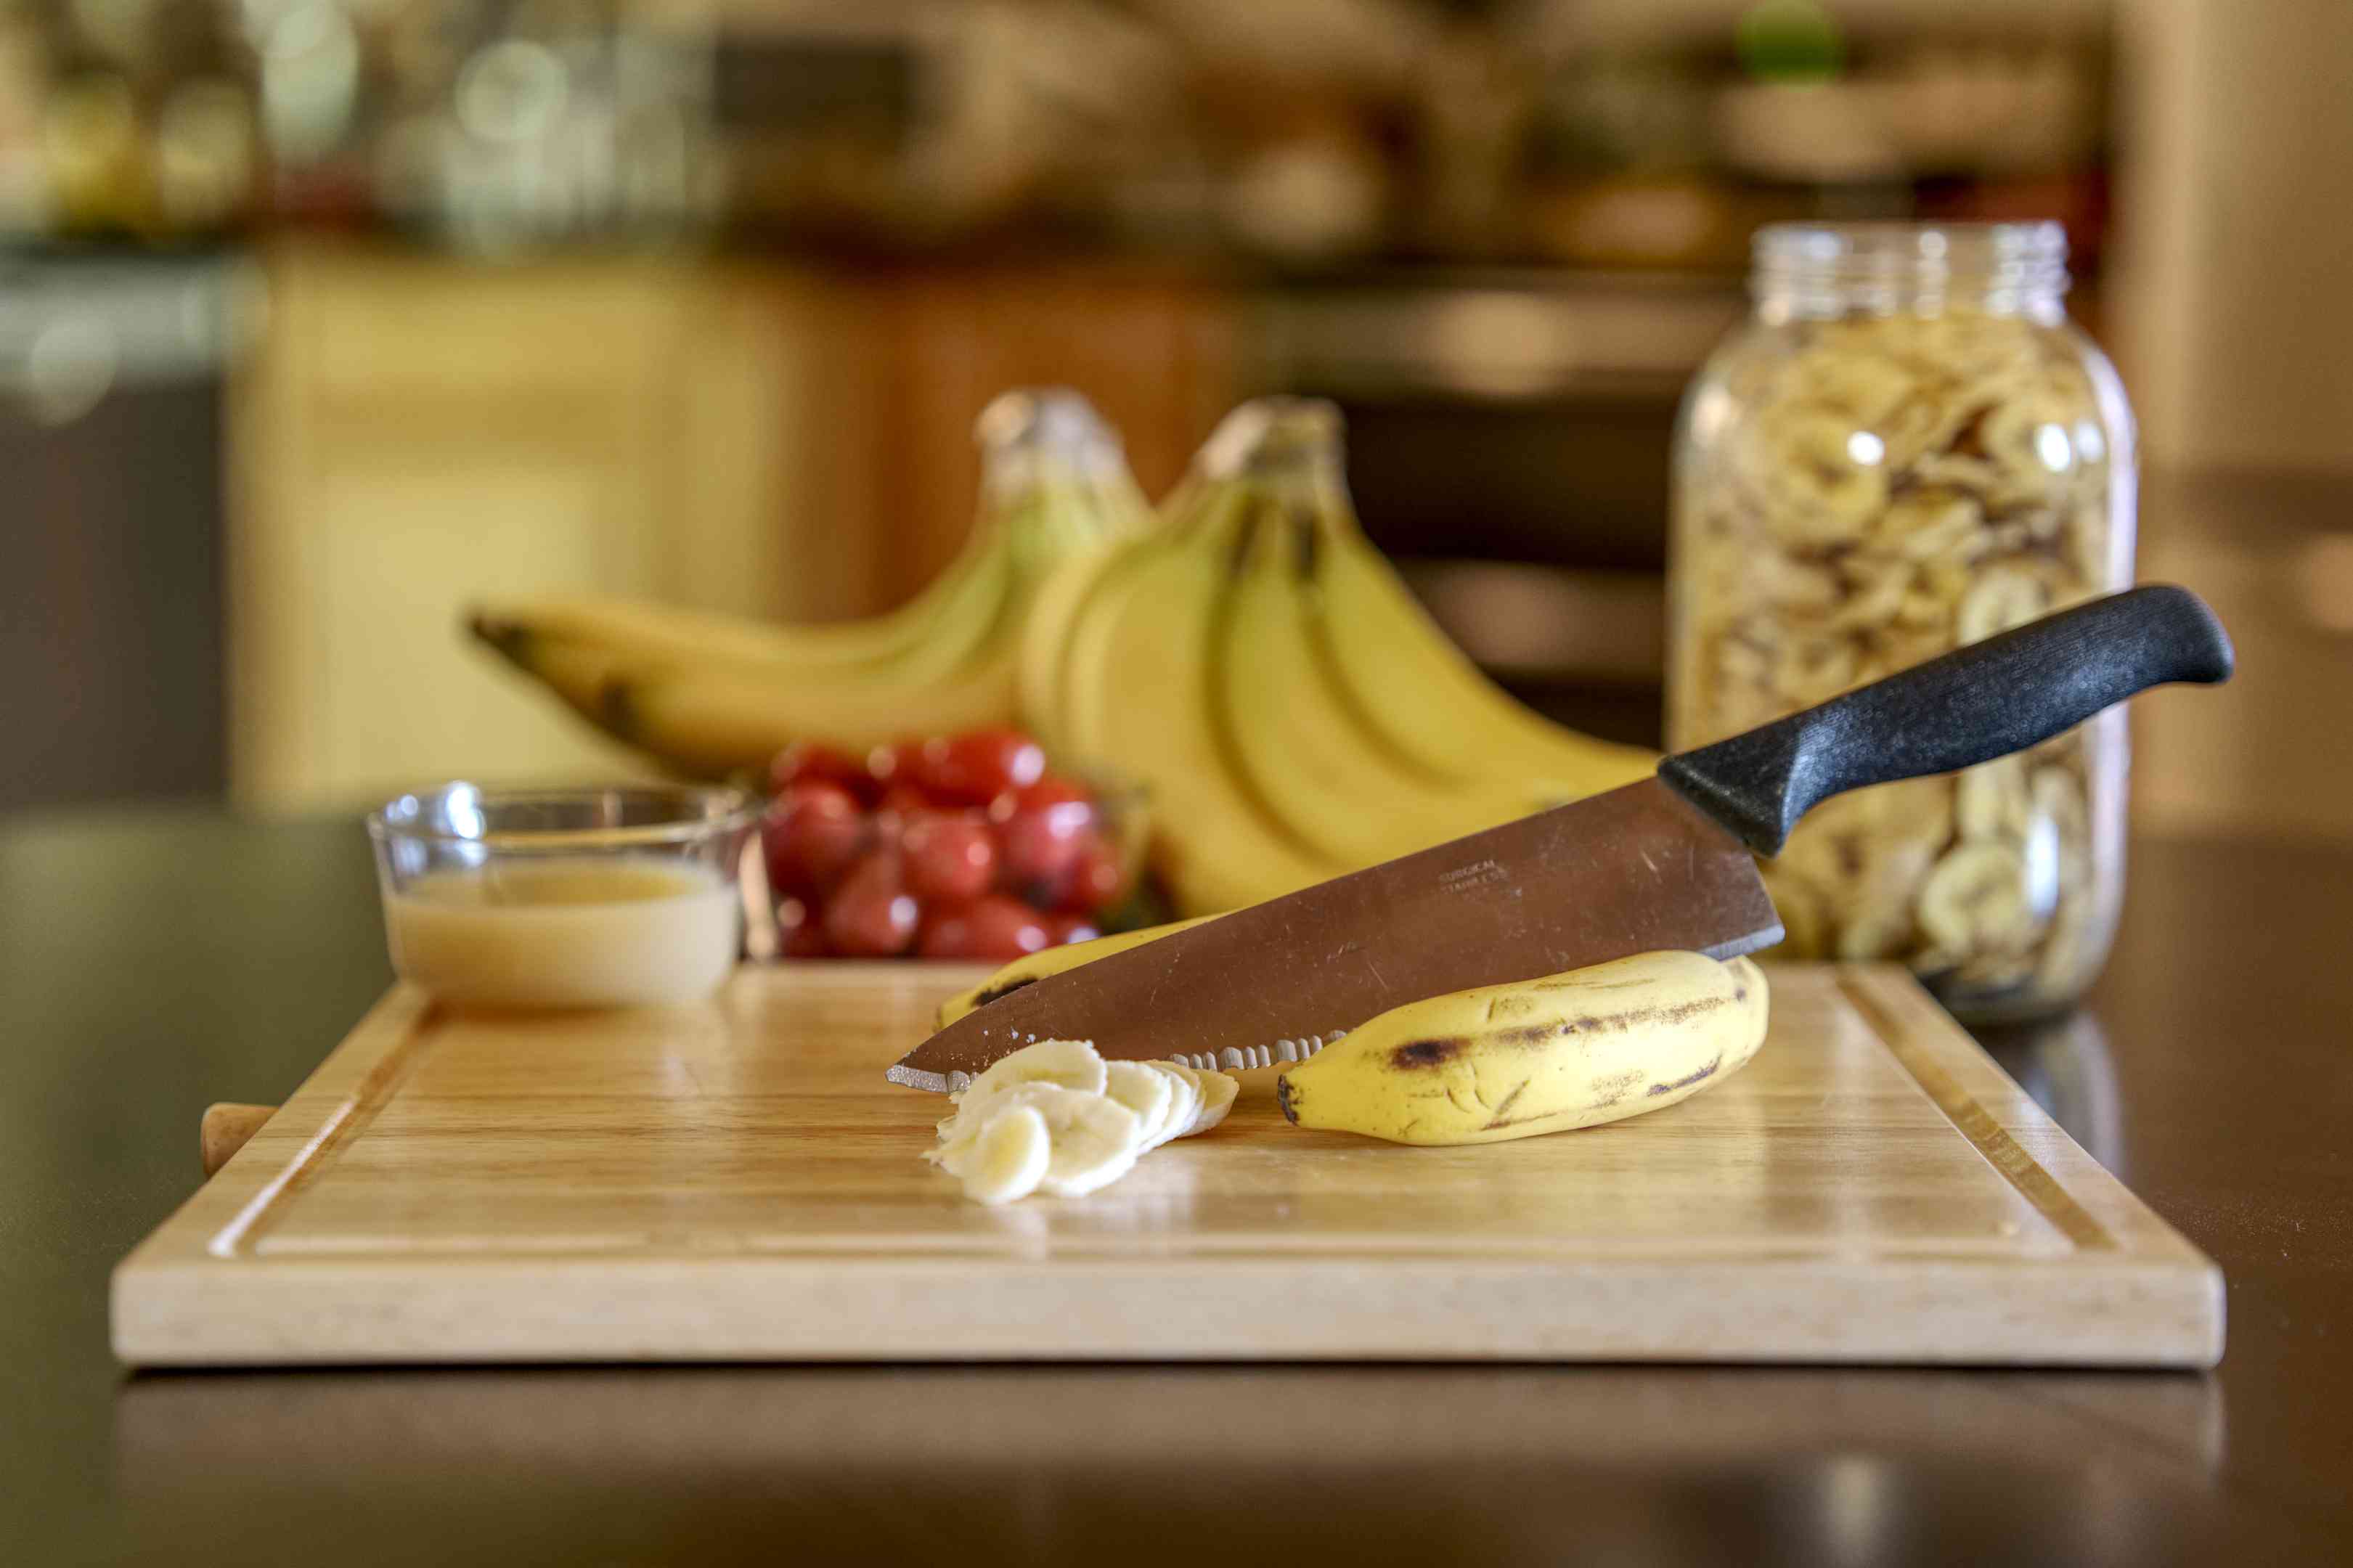 展示脱水香蕉片用品，包括大型厨师刀和切菜板